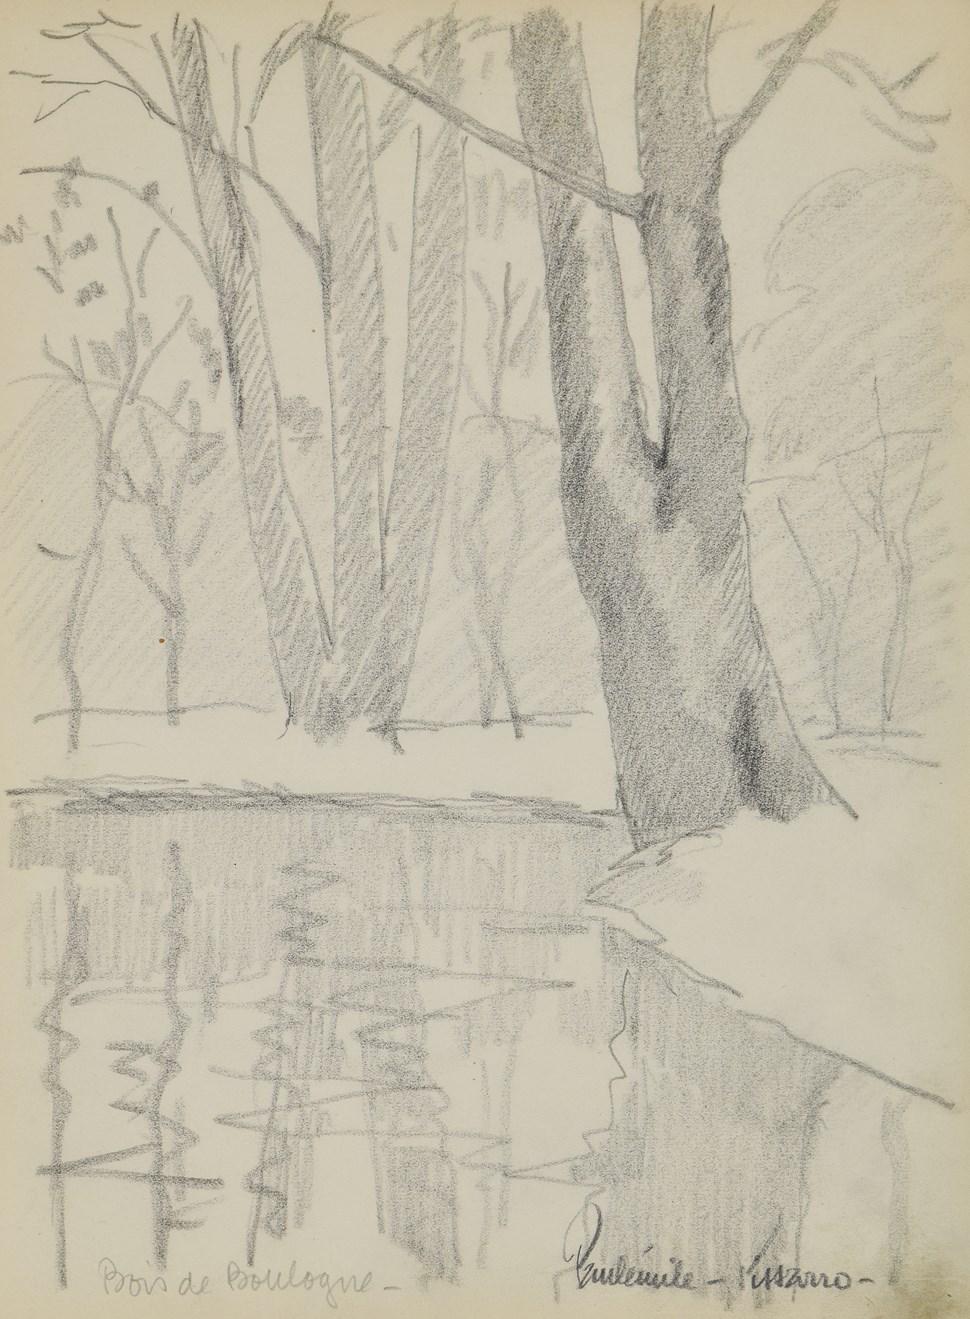 UNGESTRAHLT VERKAUFT

Bois de Boulogne von Paulémile Pissarro (1884-1972)
Graphit auf Papier
32 x 23,5 cm (12 ⁵/₈ x 9 ¹/₄ Zoll)
Signiert unten rechts, Paulémile-Pissarro-, und betitelt unten links
Ausgeführt um 1934

Dieses Werk wird von einem